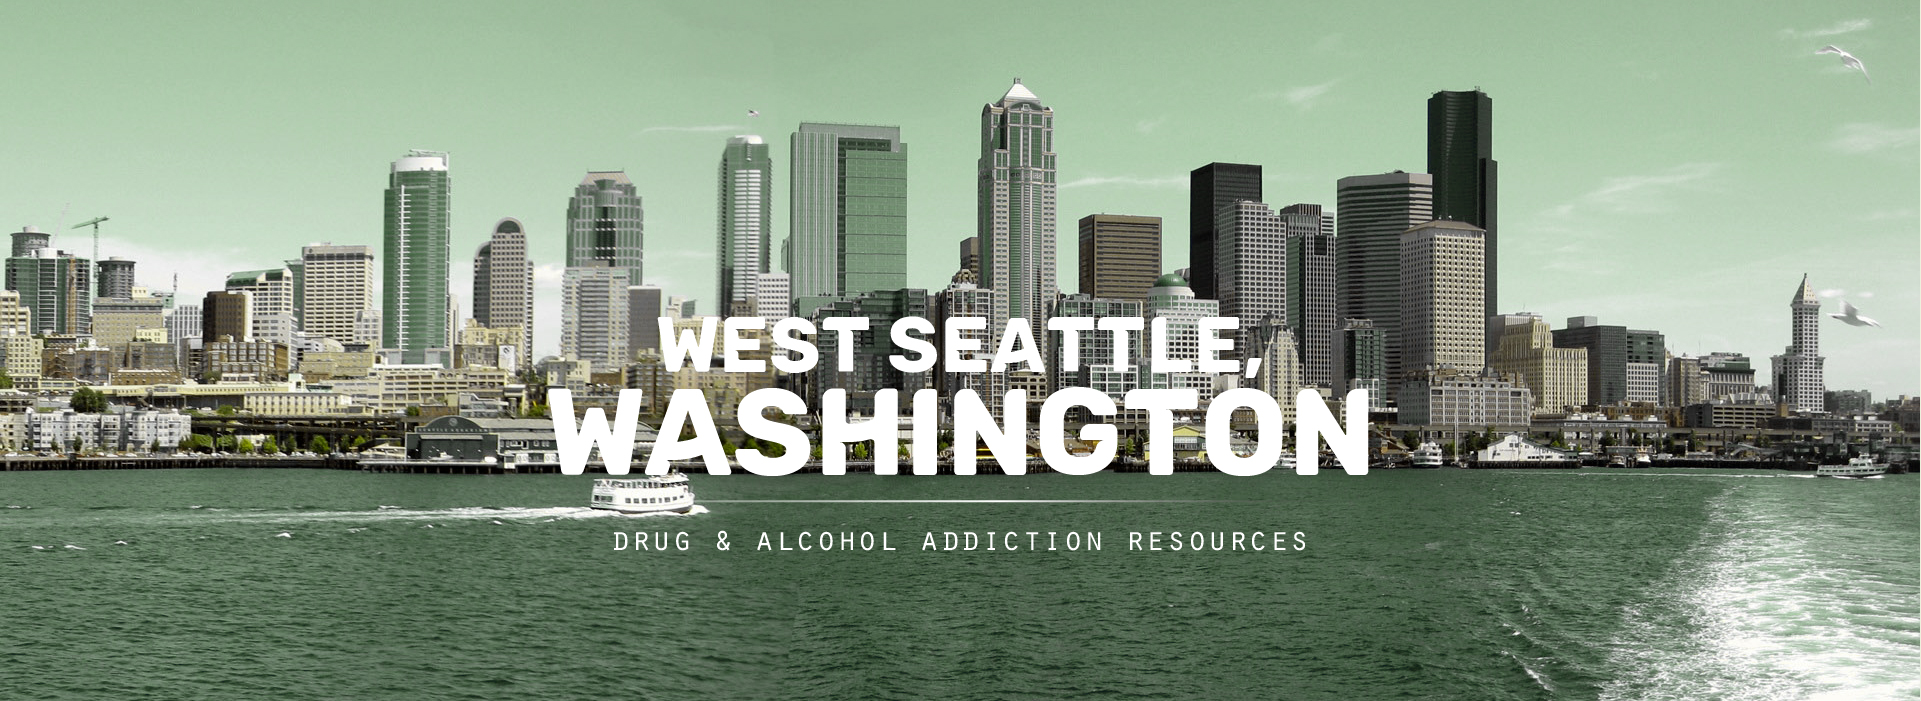 West Seattle, Washington Addiction Resources